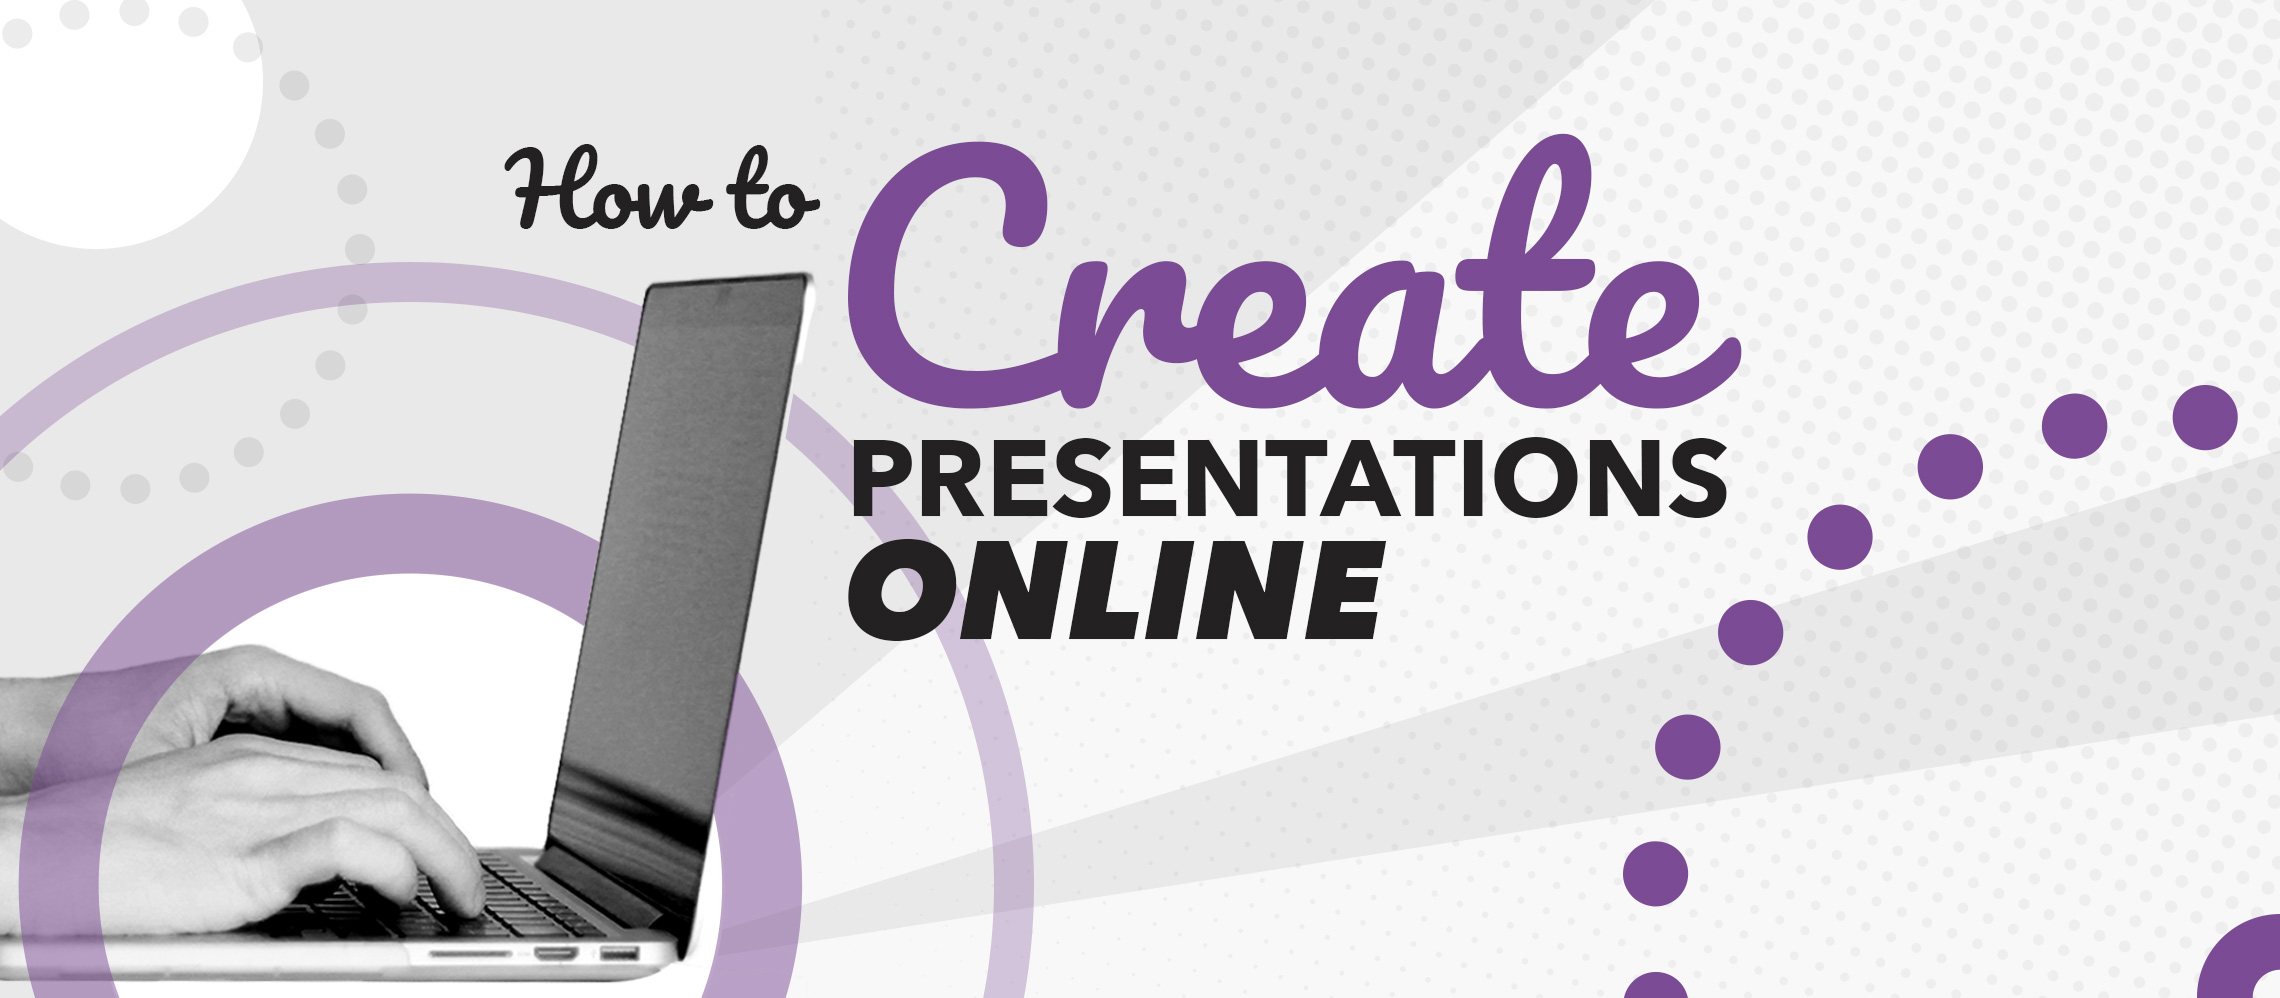 prepare online powerpoint presentation